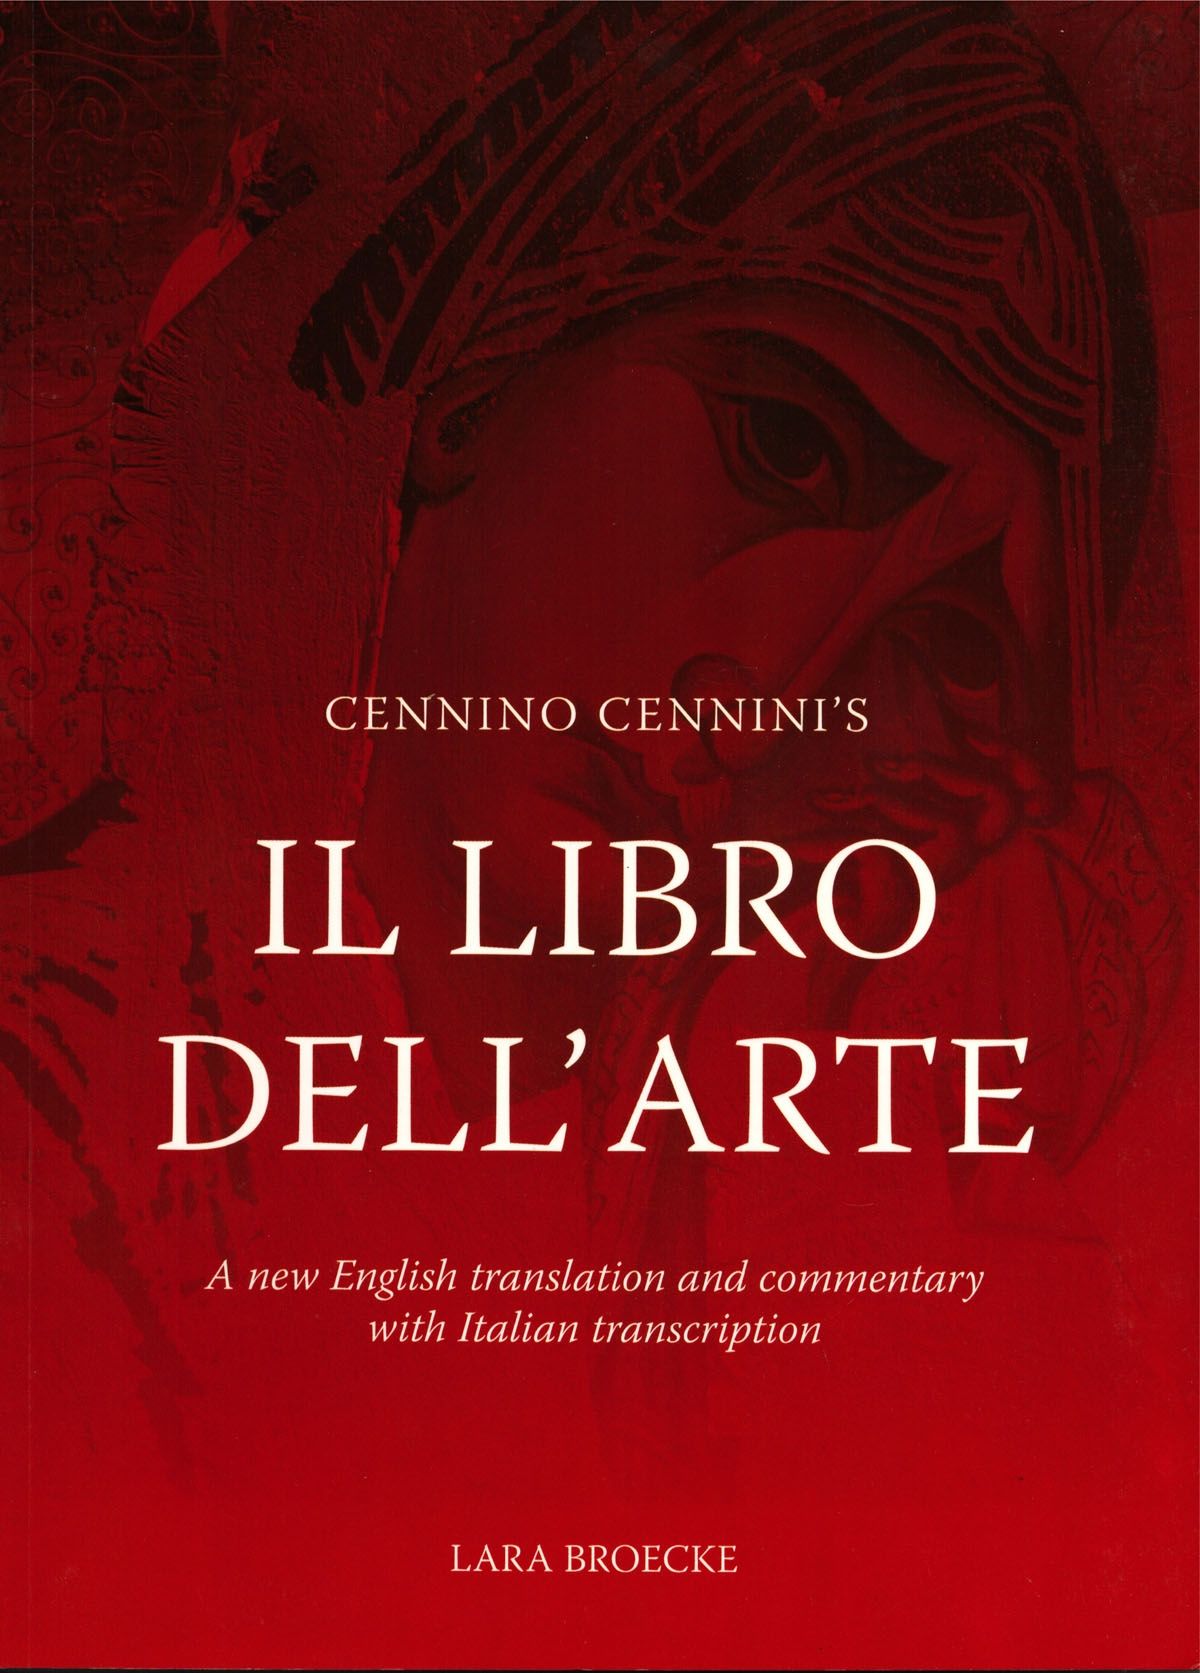 Cennino Cennini's Il Libro del Arte